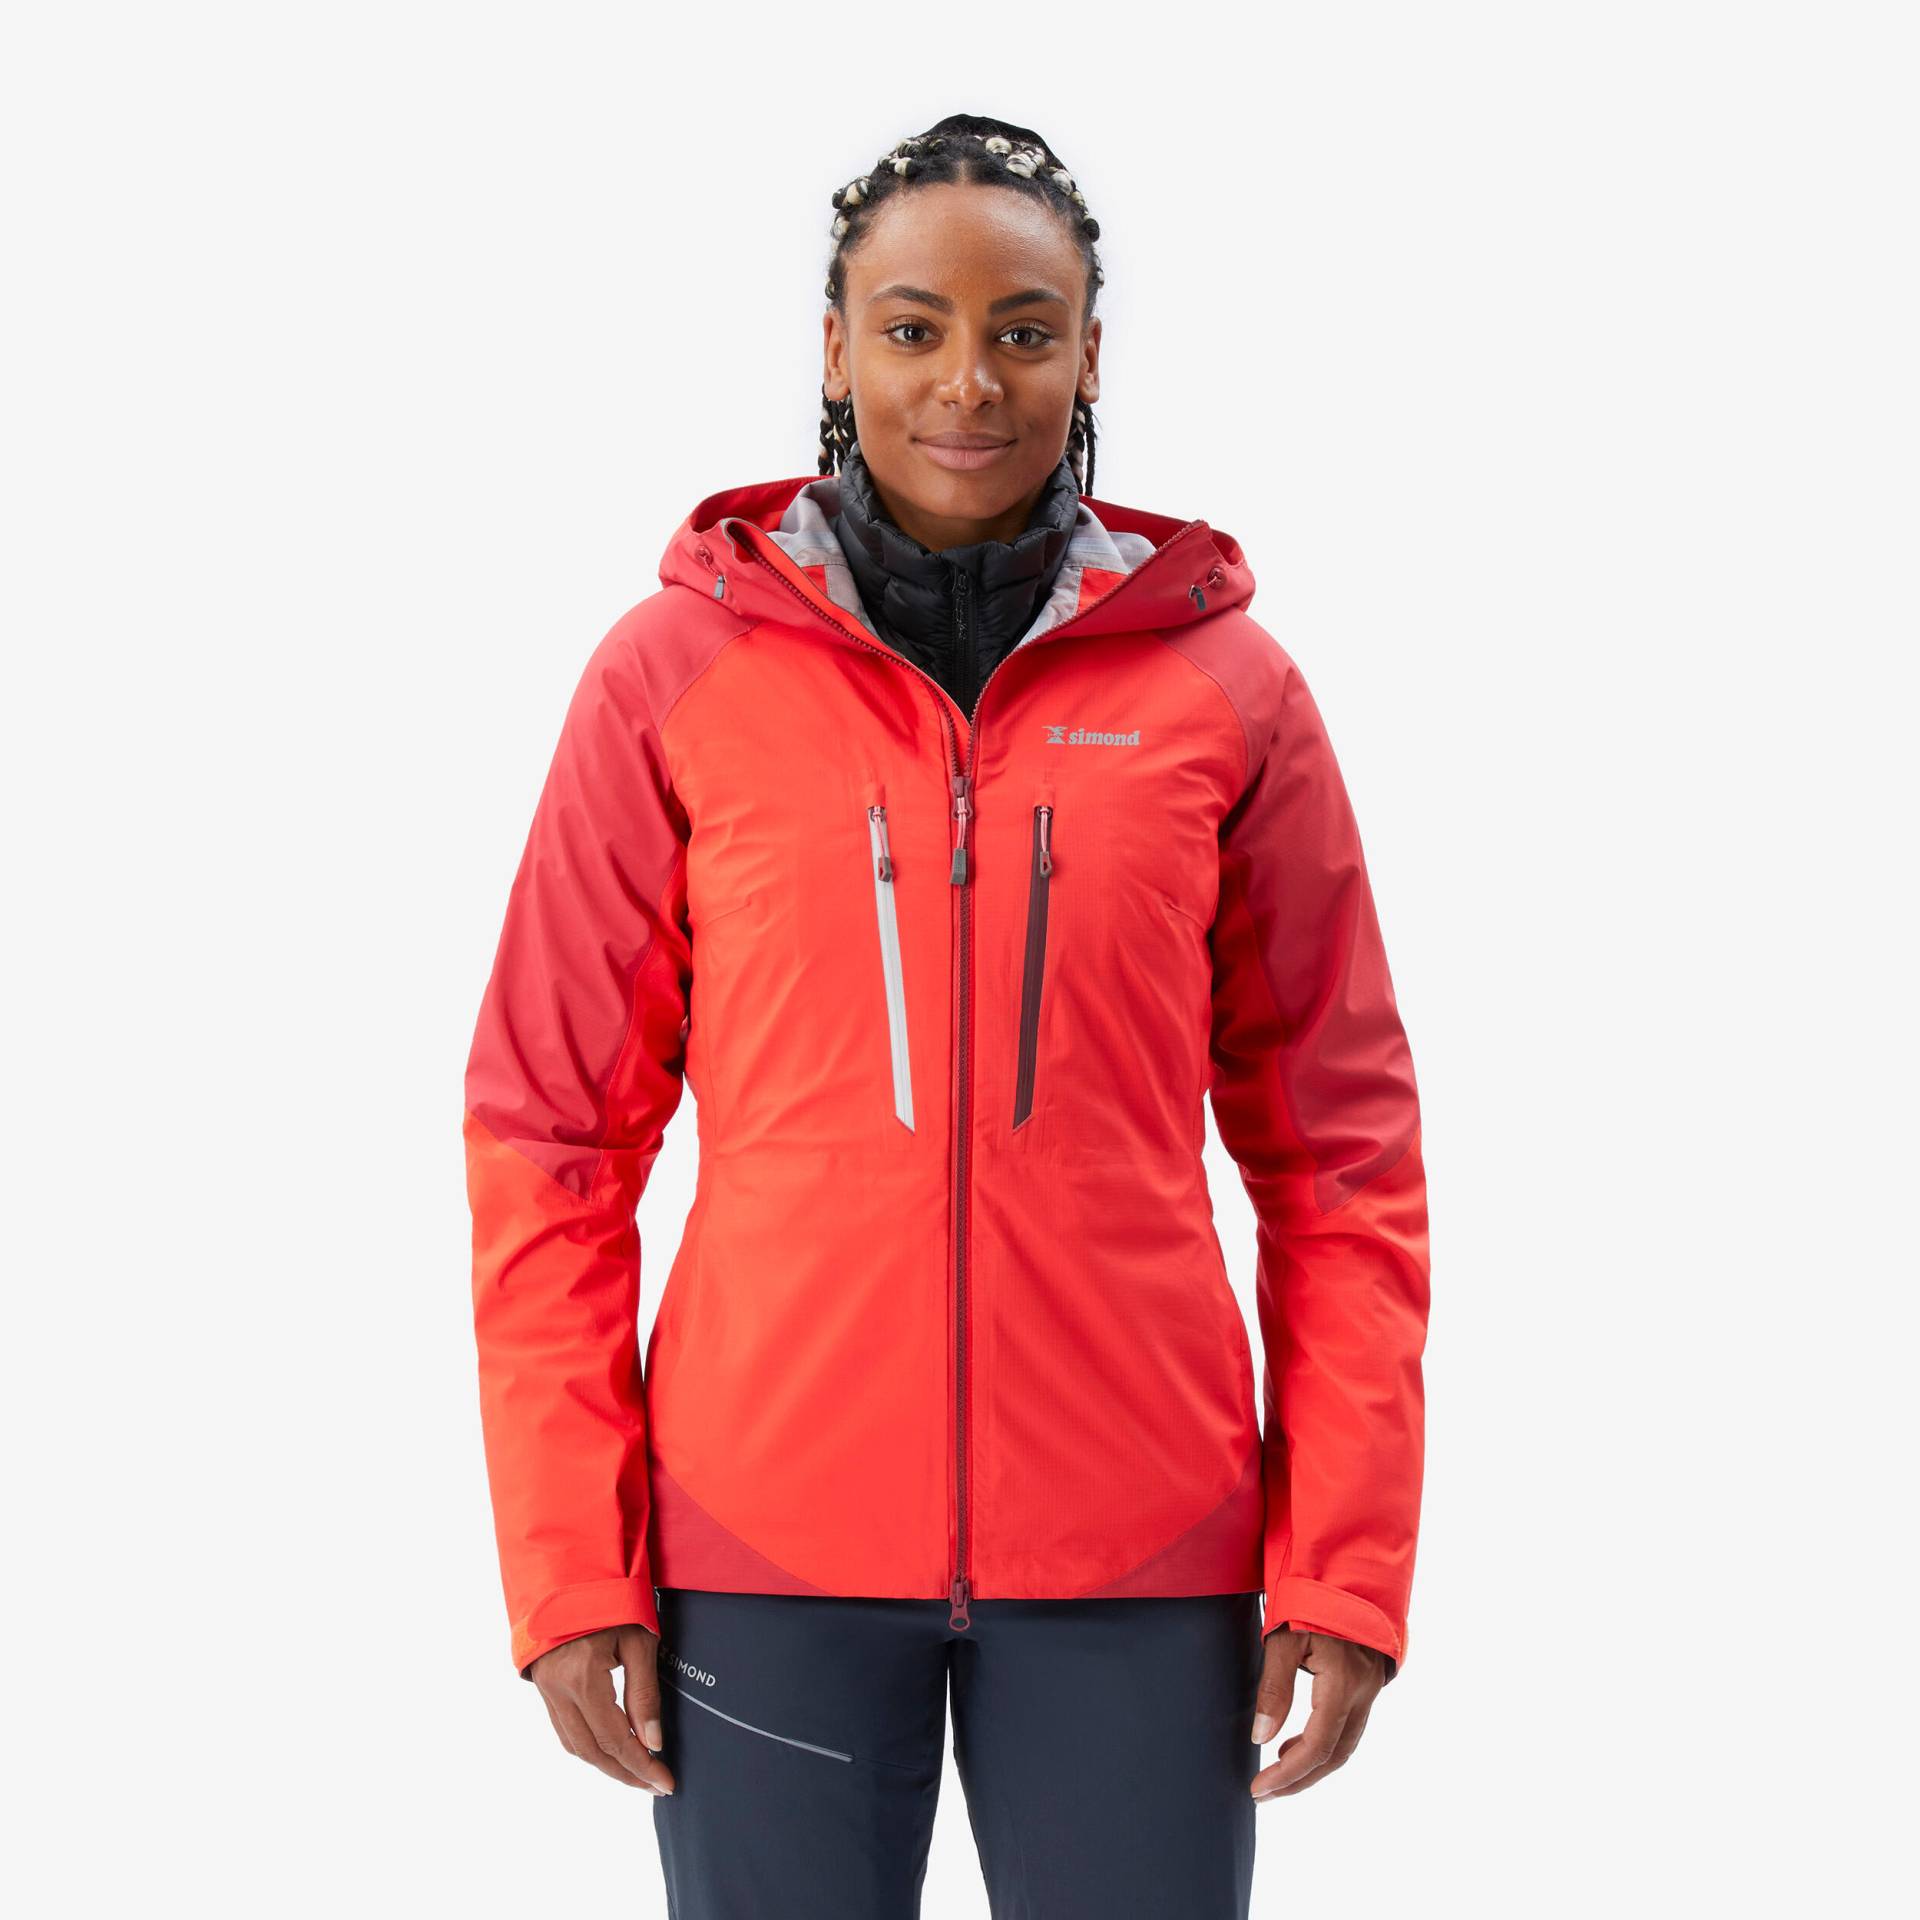 Regenjacke Damen wasserdicht - Alpinism Light rot von SIMOND